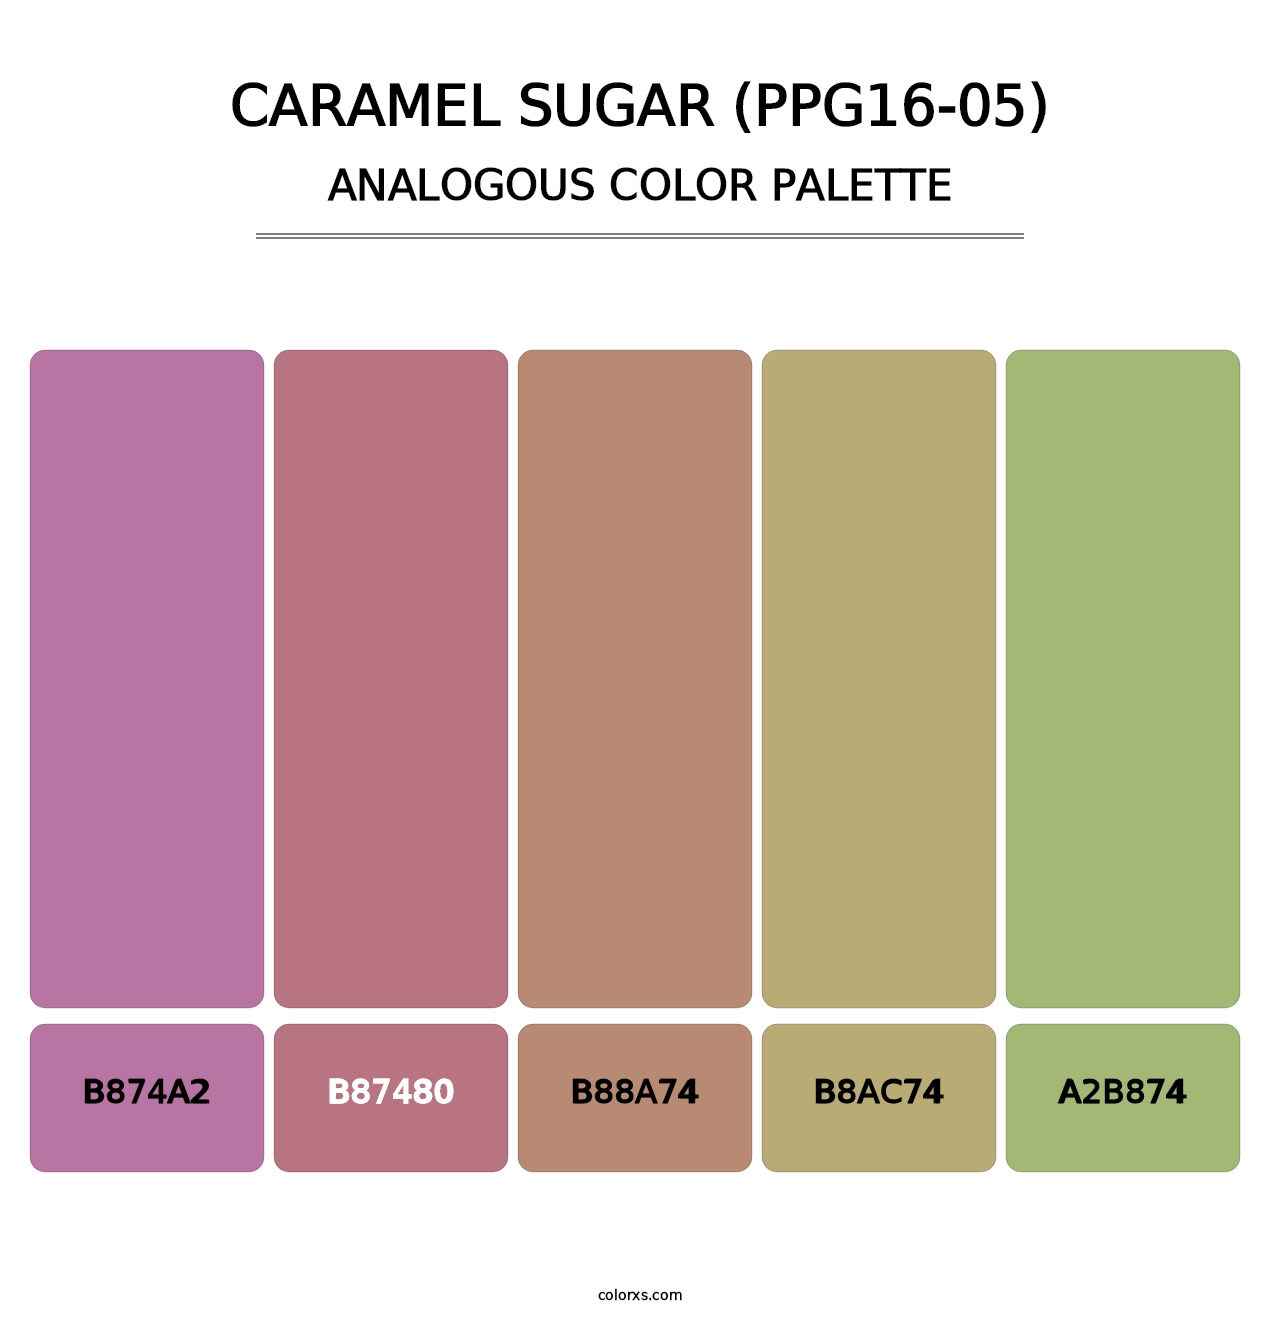 Caramel Sugar (PPG16-05) - Analogous Color Palette